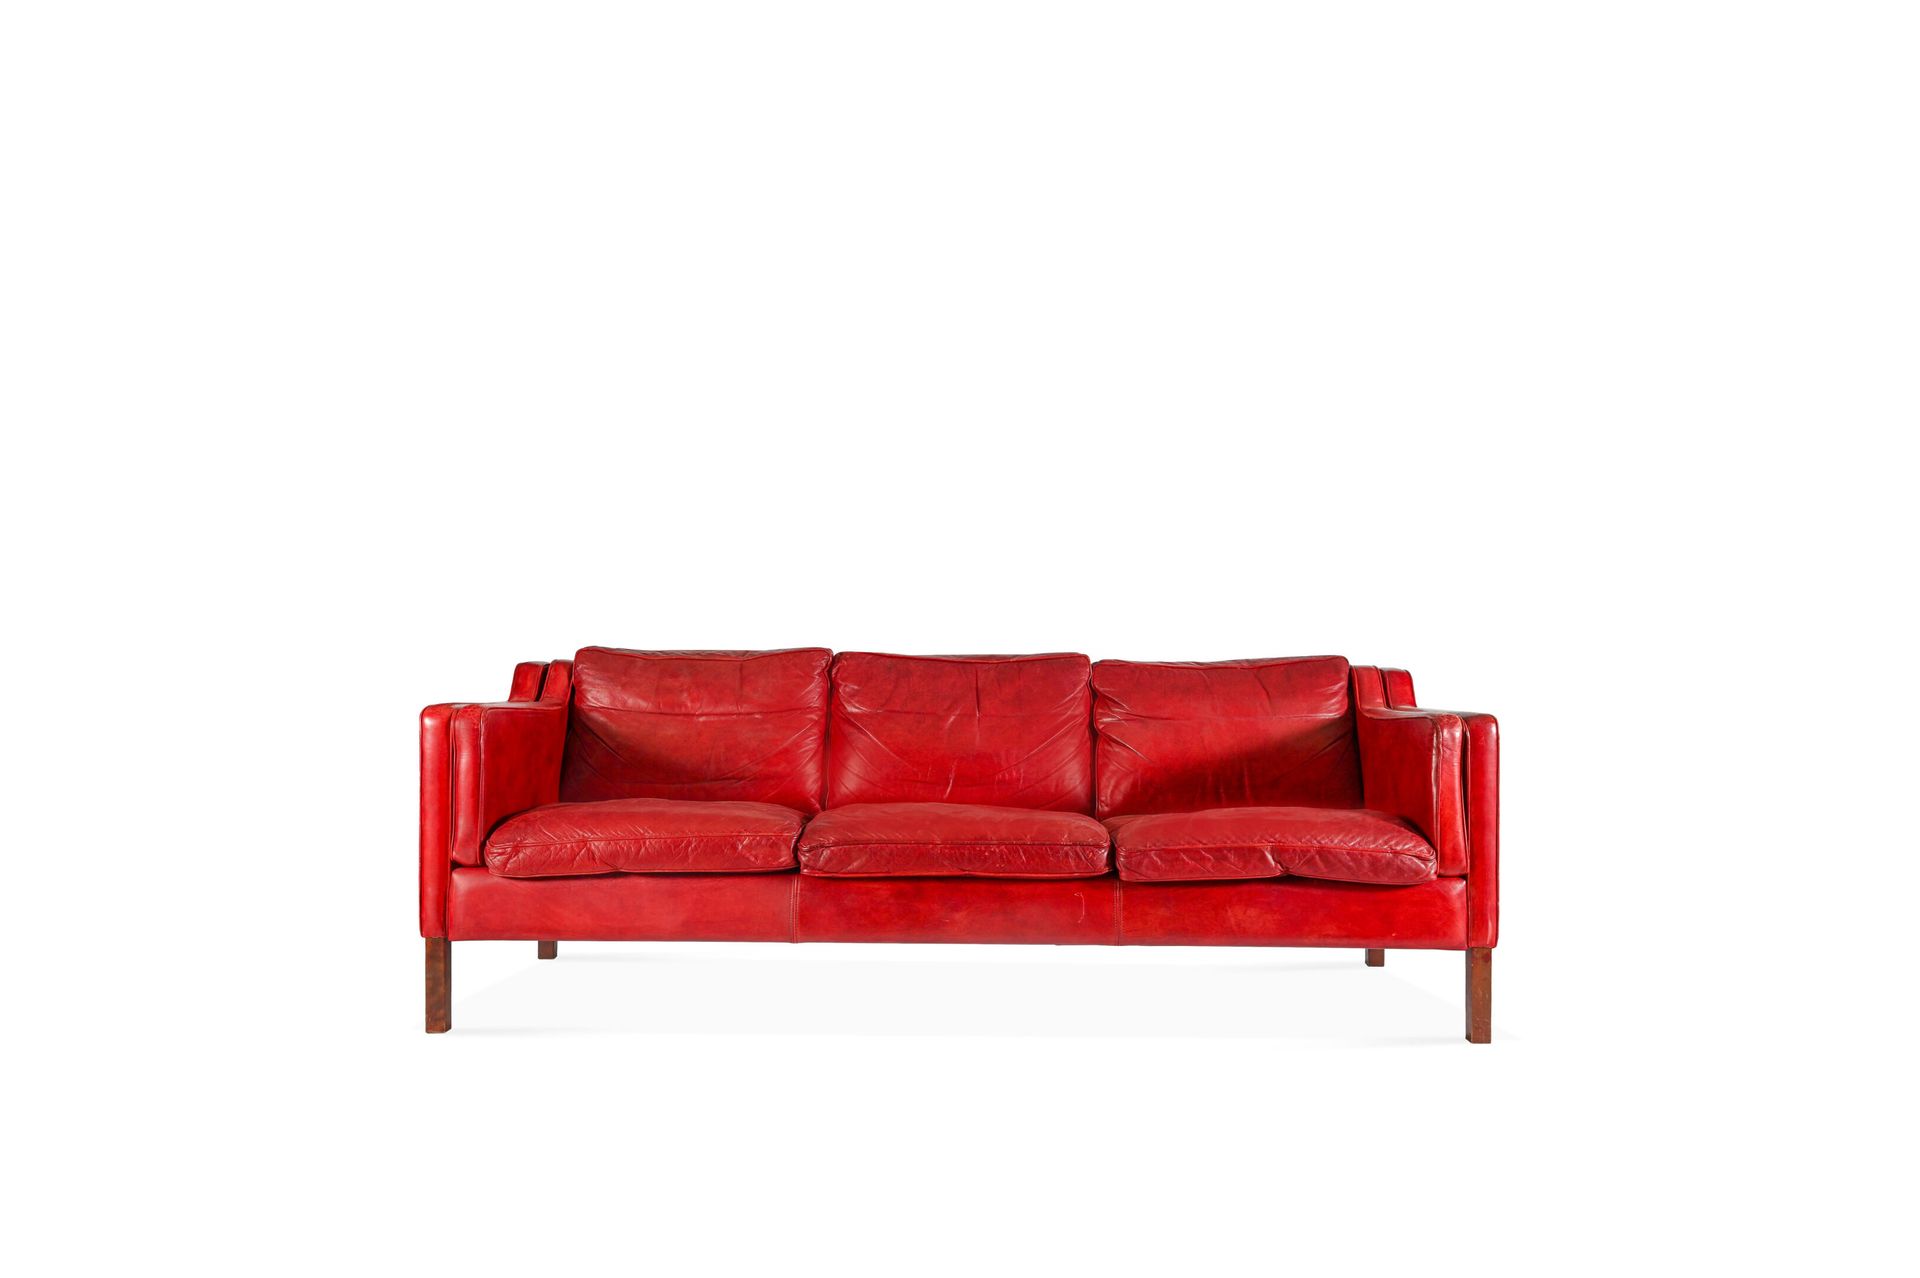 Null Edición de Stouby de los años 70.

Gran sofá de tres plazas que descansa so&hellip;